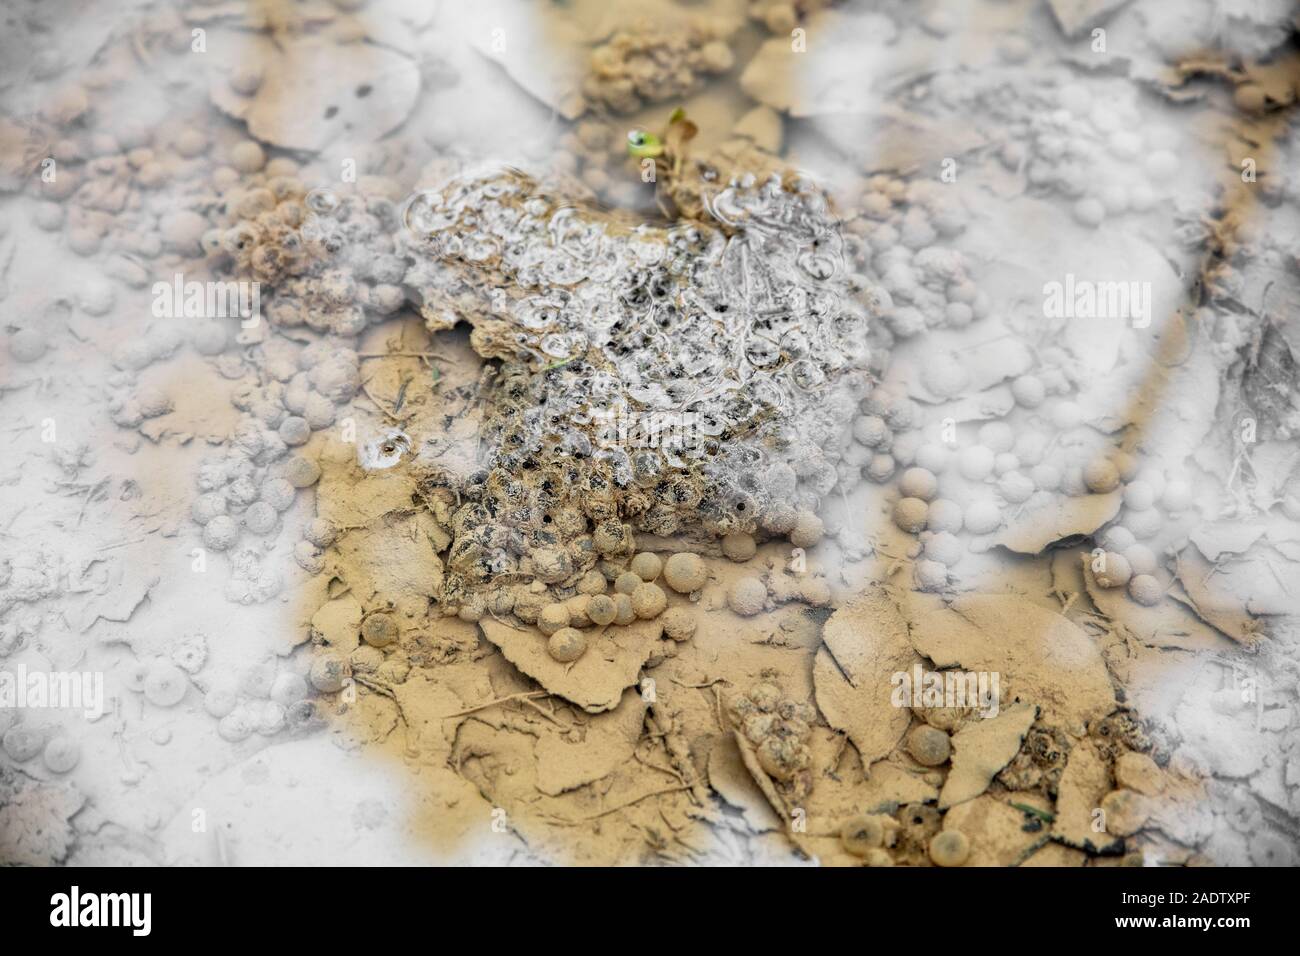 Frog spawn in un stagno selvatico, anfibi uova su acqua Foto Stock